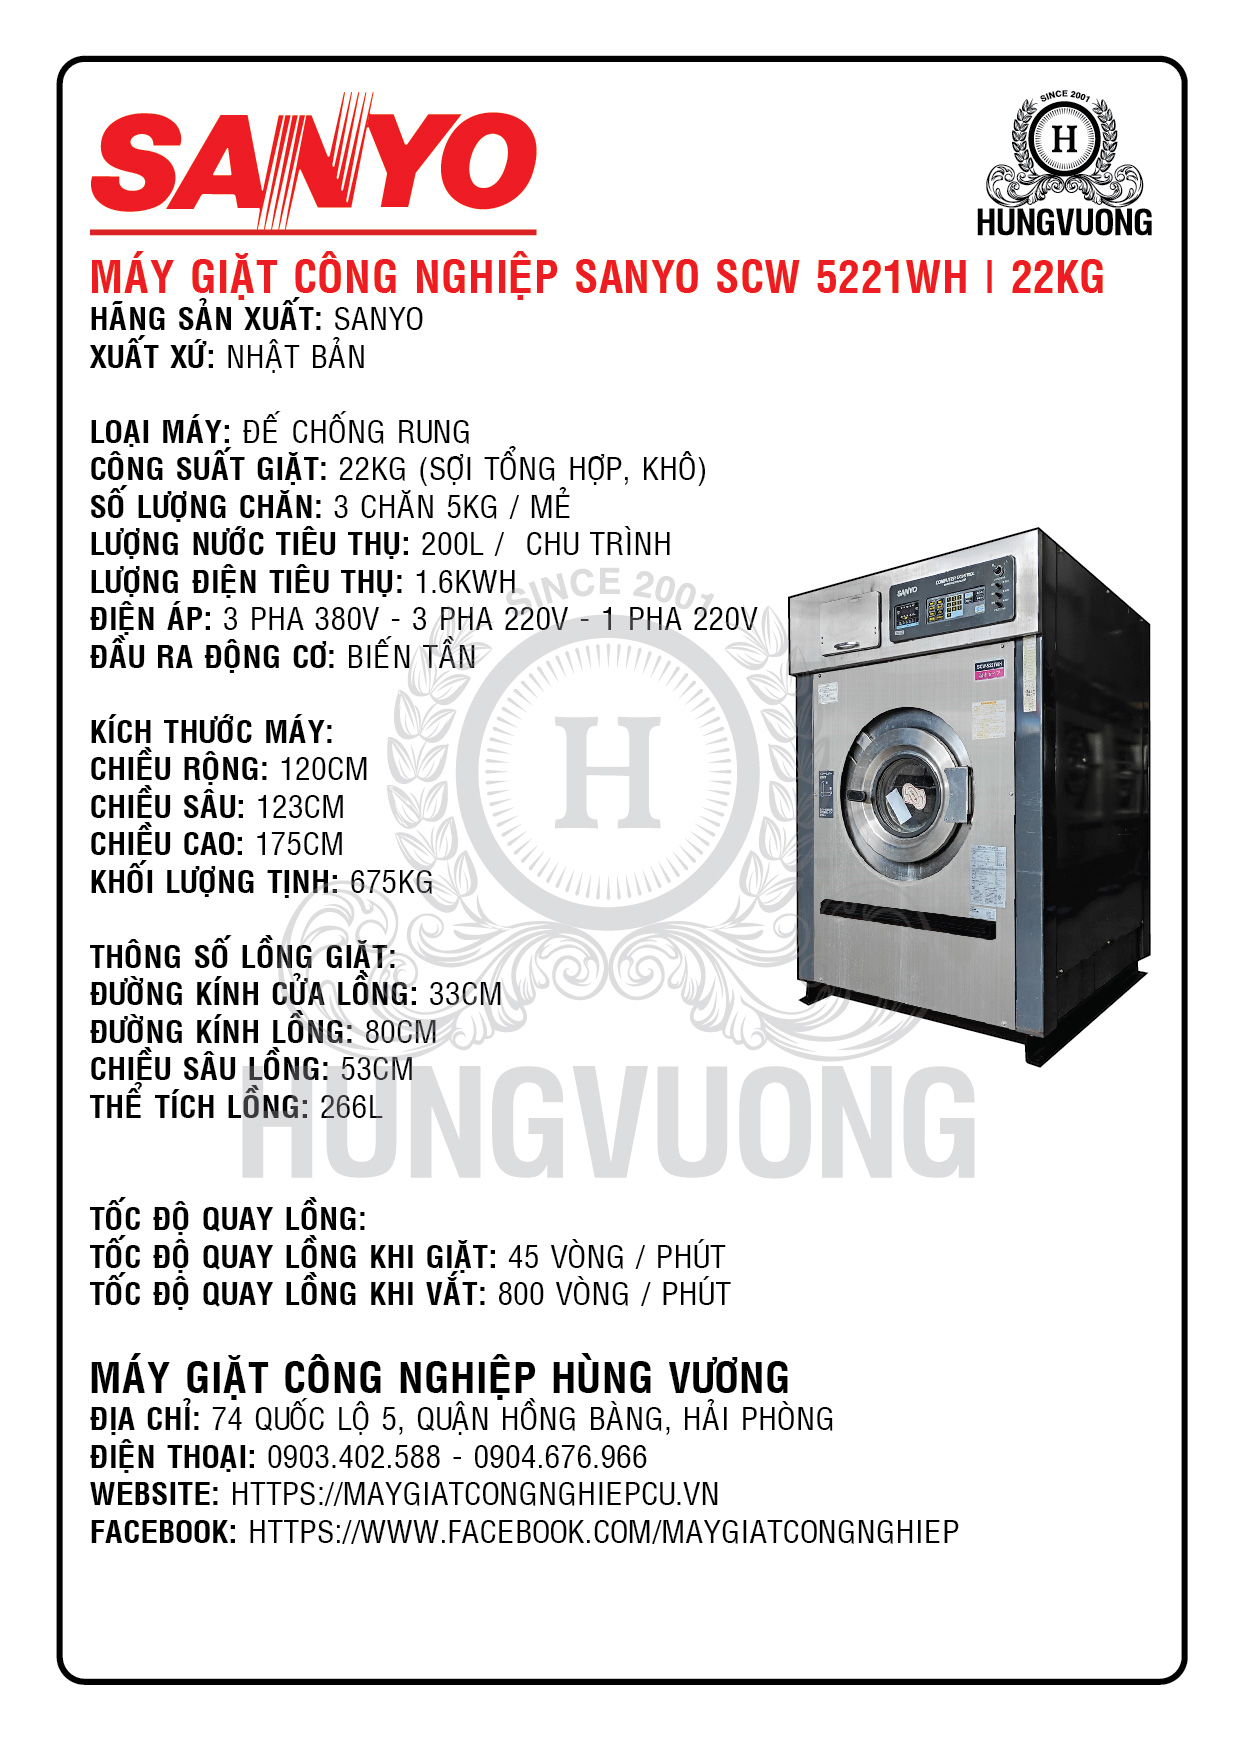 Thông số kỹ thuật máy giặt công nghiệp SANYO SCW 5221WH, 22kg, chân chống rung, biến tần, Nhật Bản